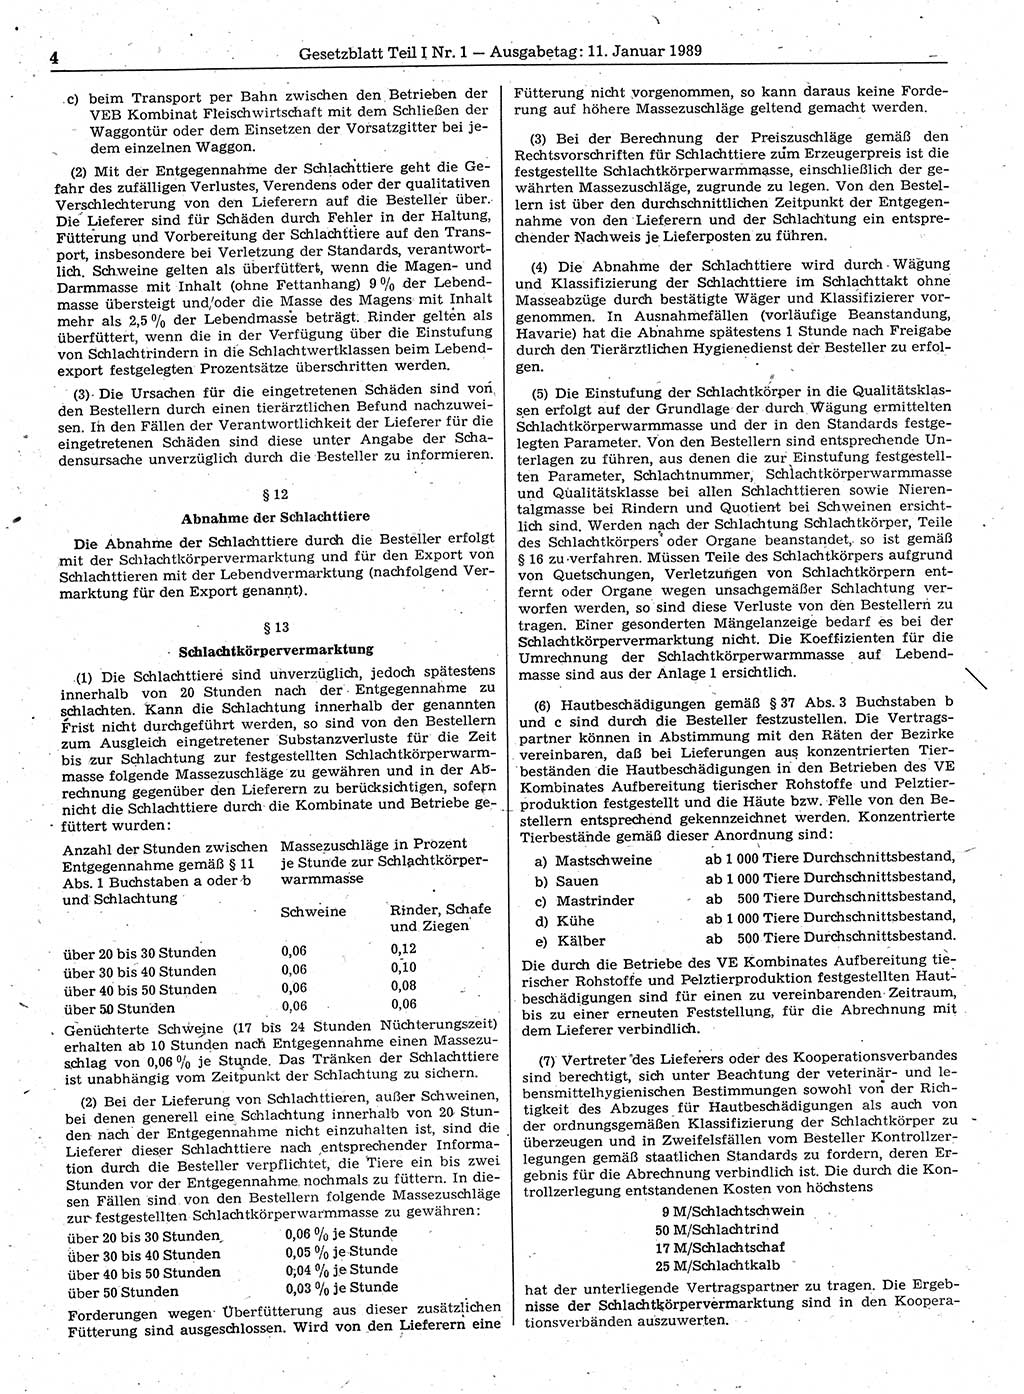 Gesetzblatt (GBl.) der Deutschen Demokratischen Republik (DDR) Teil Ⅰ 1989, Seite 4 (GBl. DDR Ⅰ 1989, S. 4)